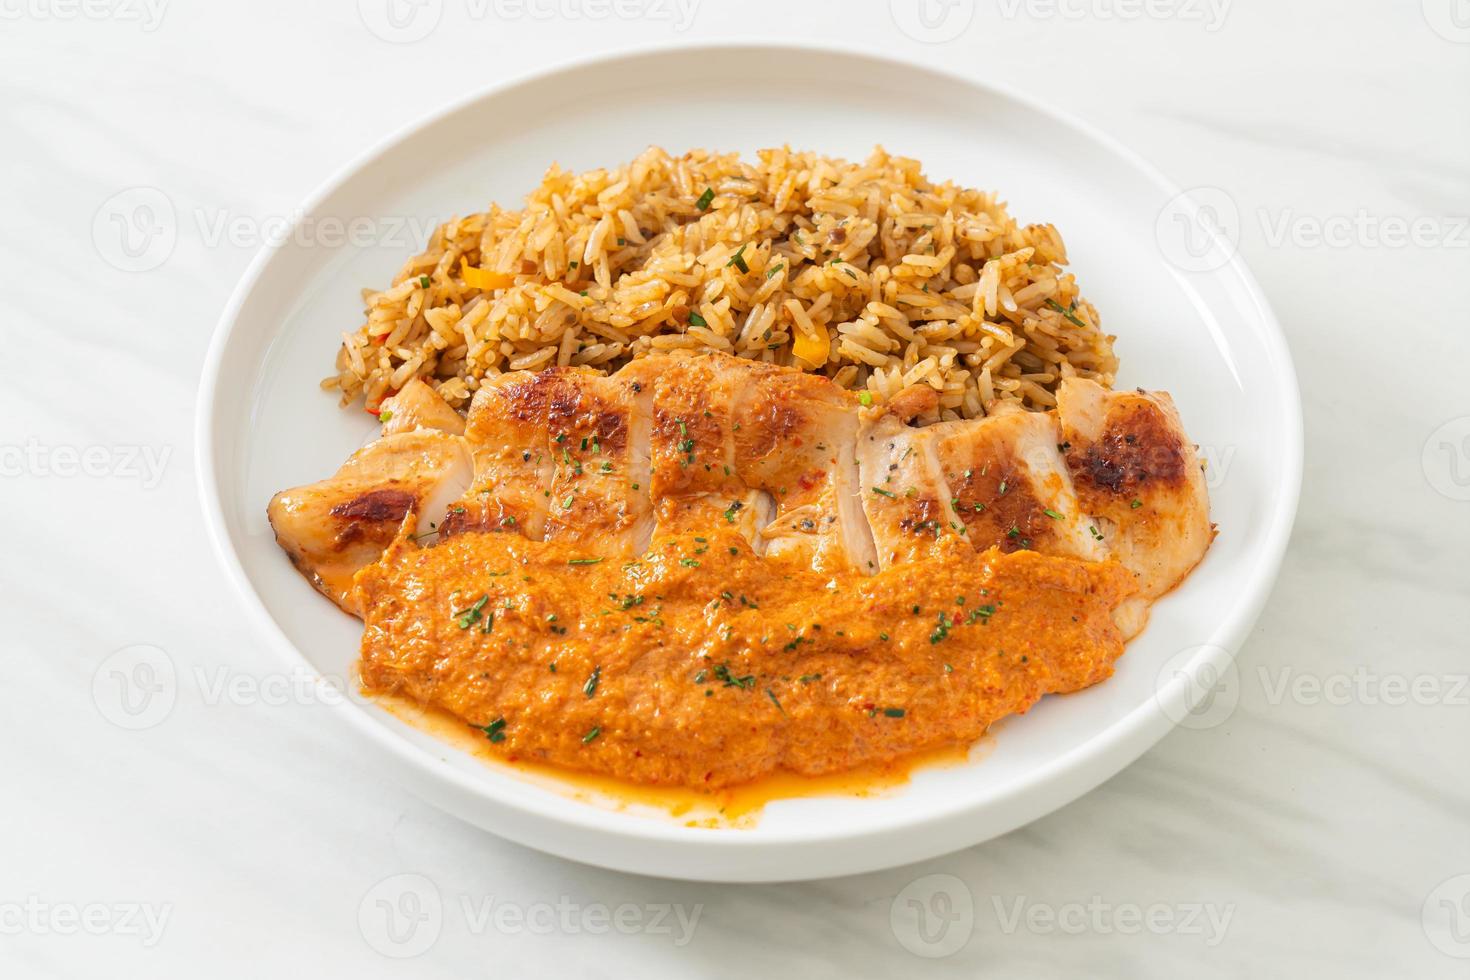 gegrilde kipsteak met rode currysaus en rijst - moslimvoedselstijl foto